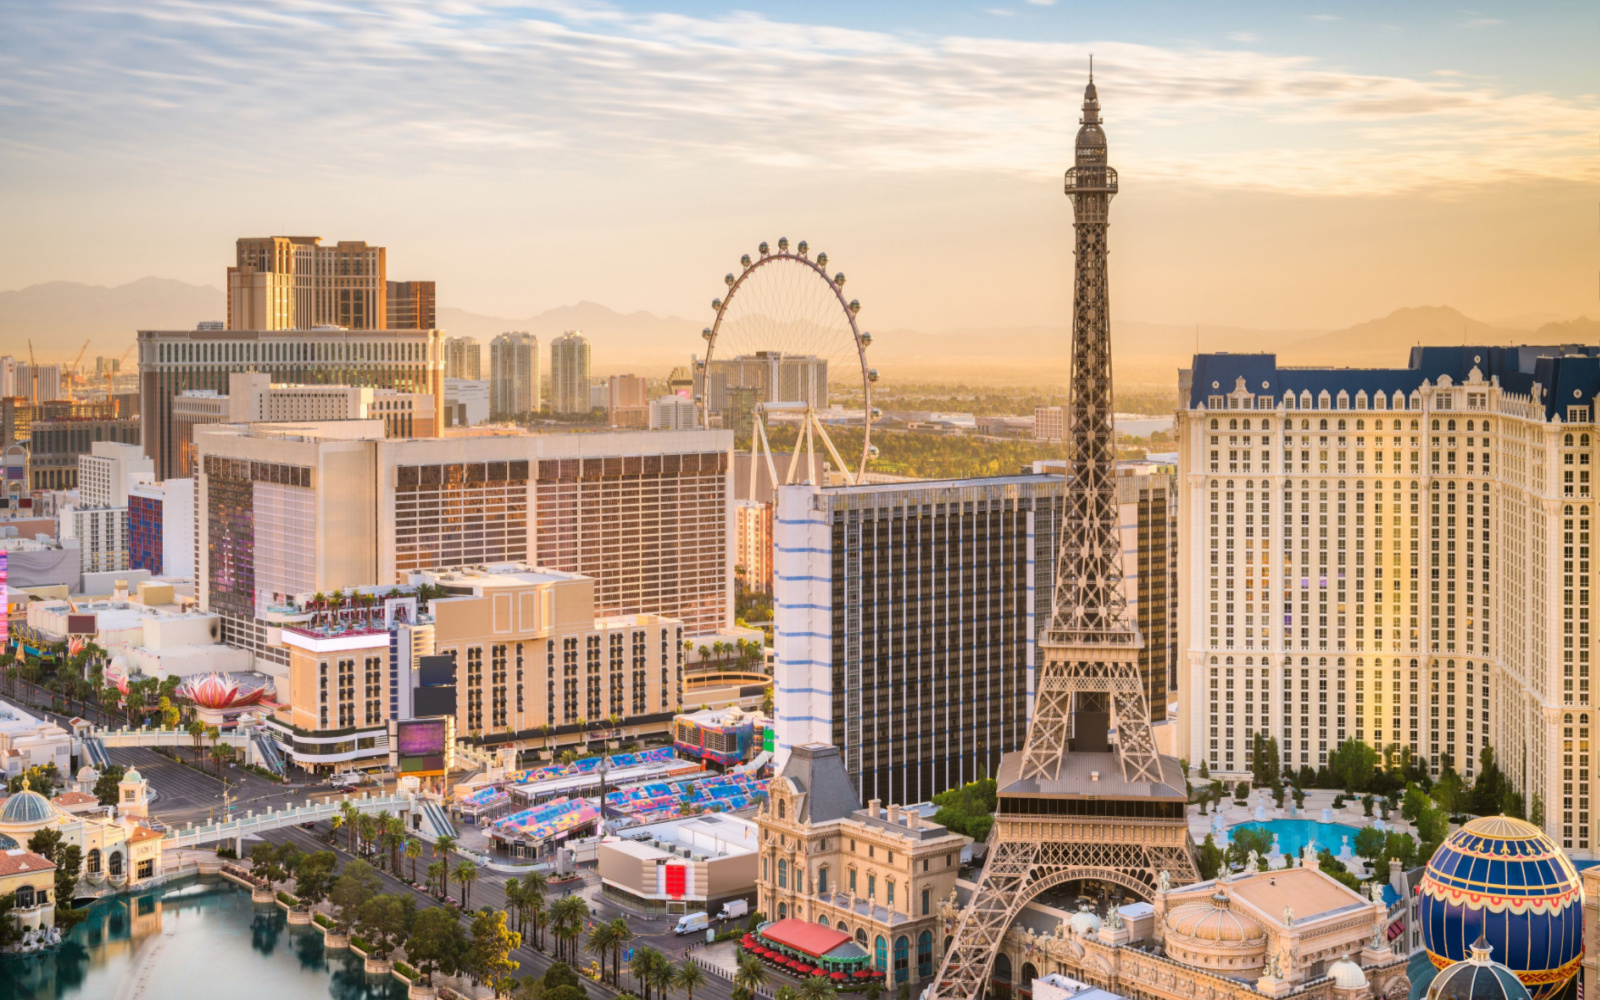 Is Las Vegas Safe? | Travel Tips & Safety Concerns